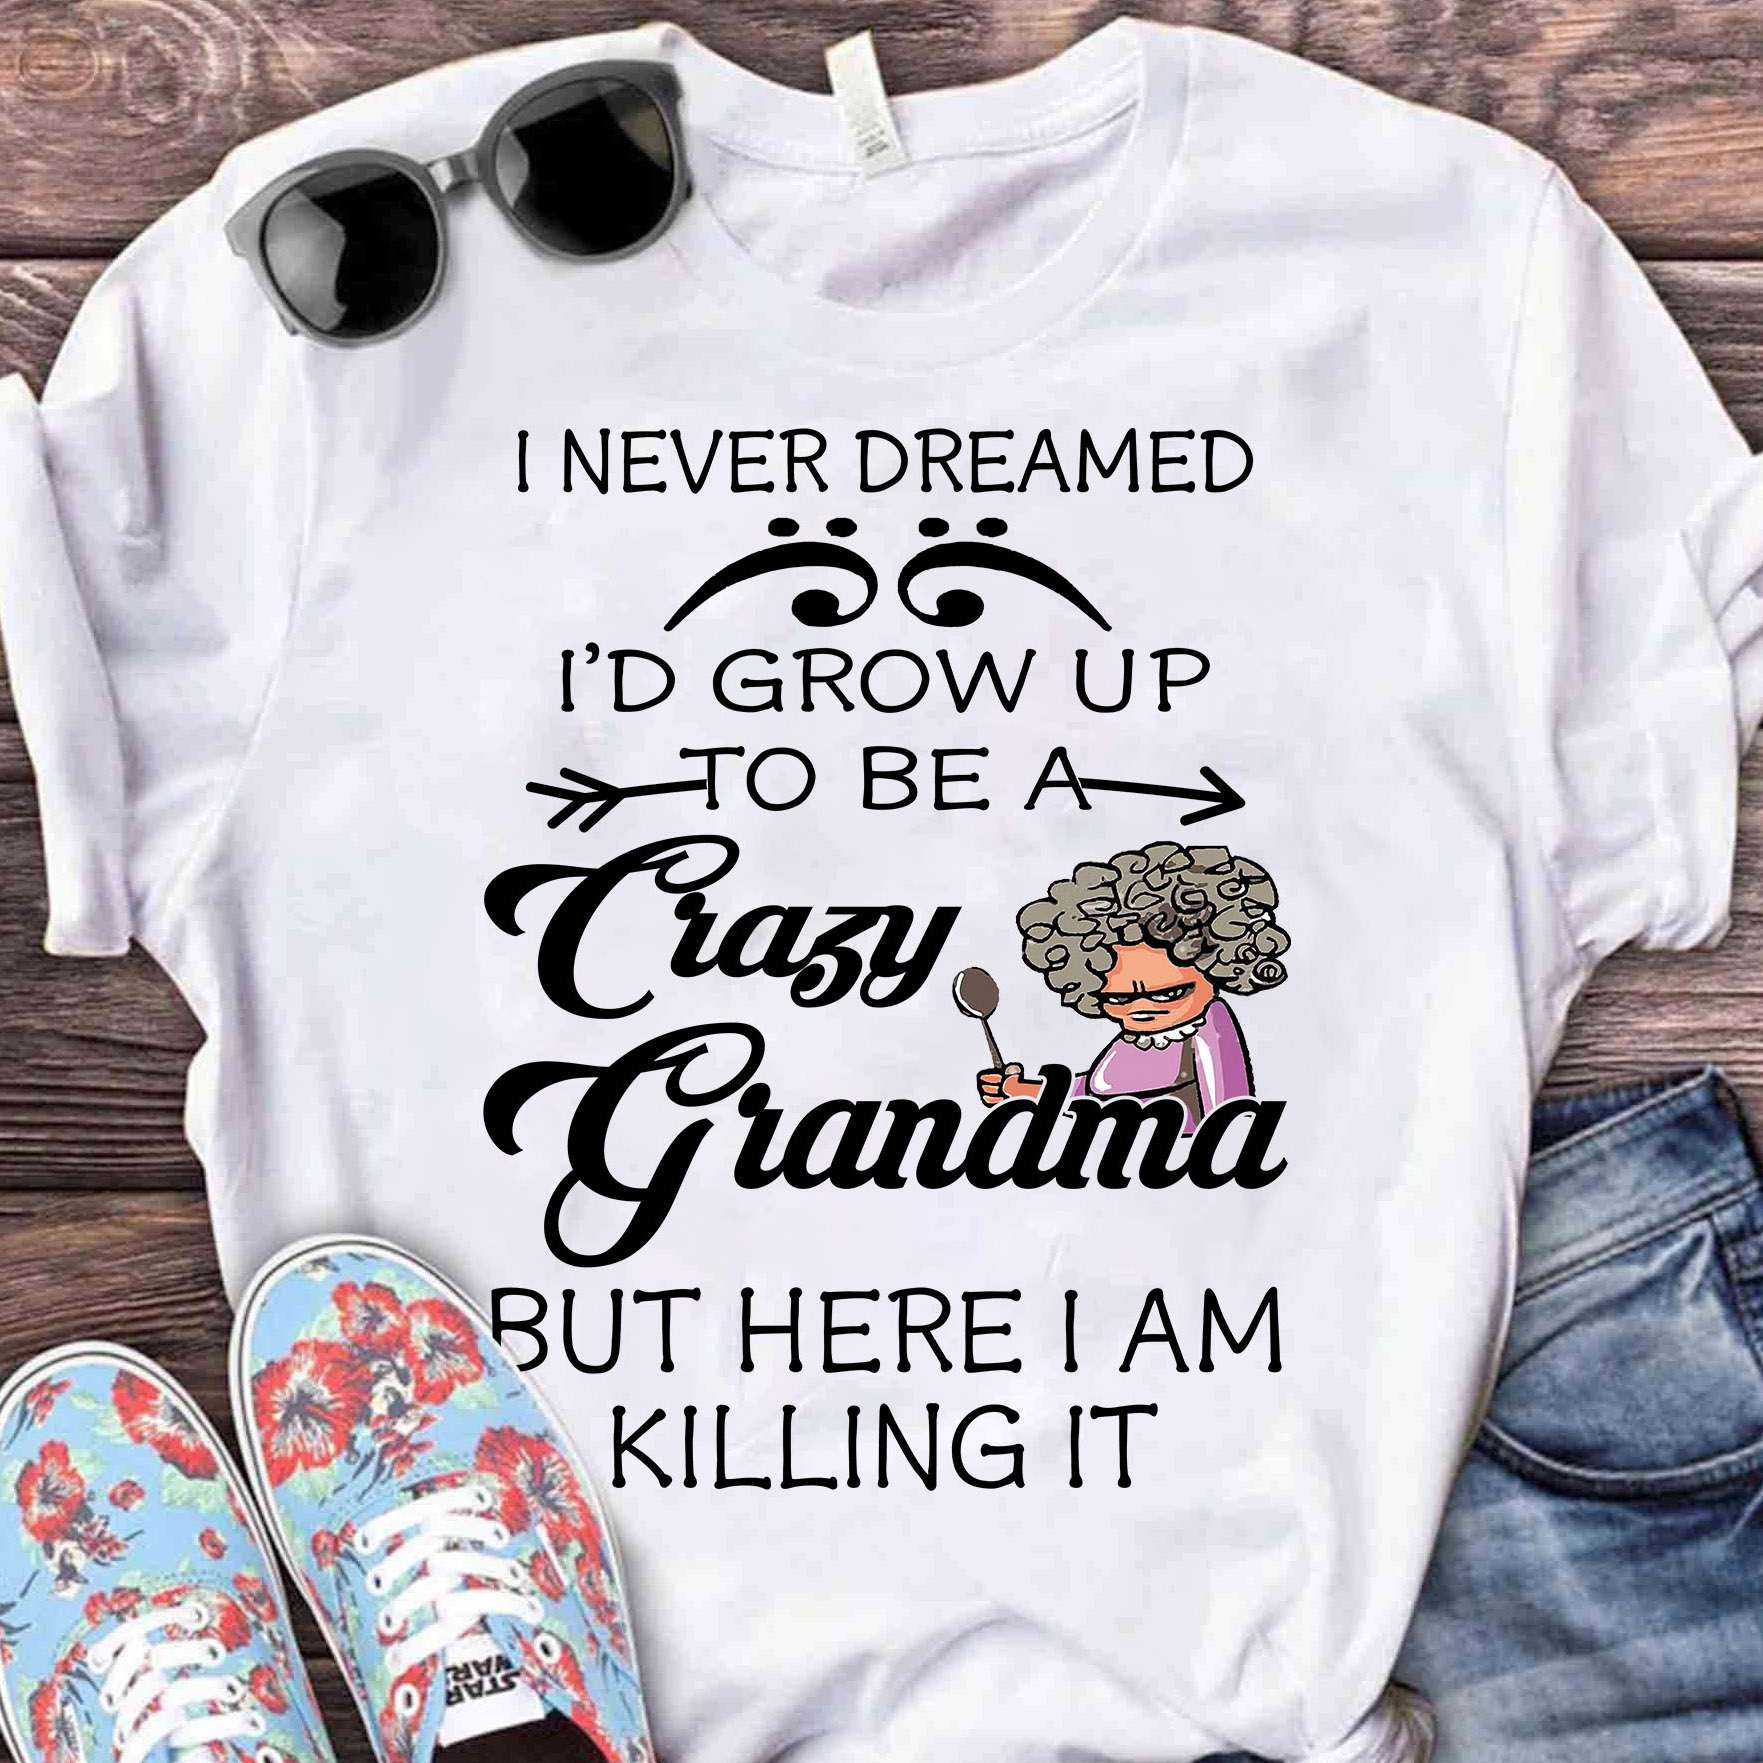 I never dreamed I'd grow up to be a crazy grandma - Crazy grandma